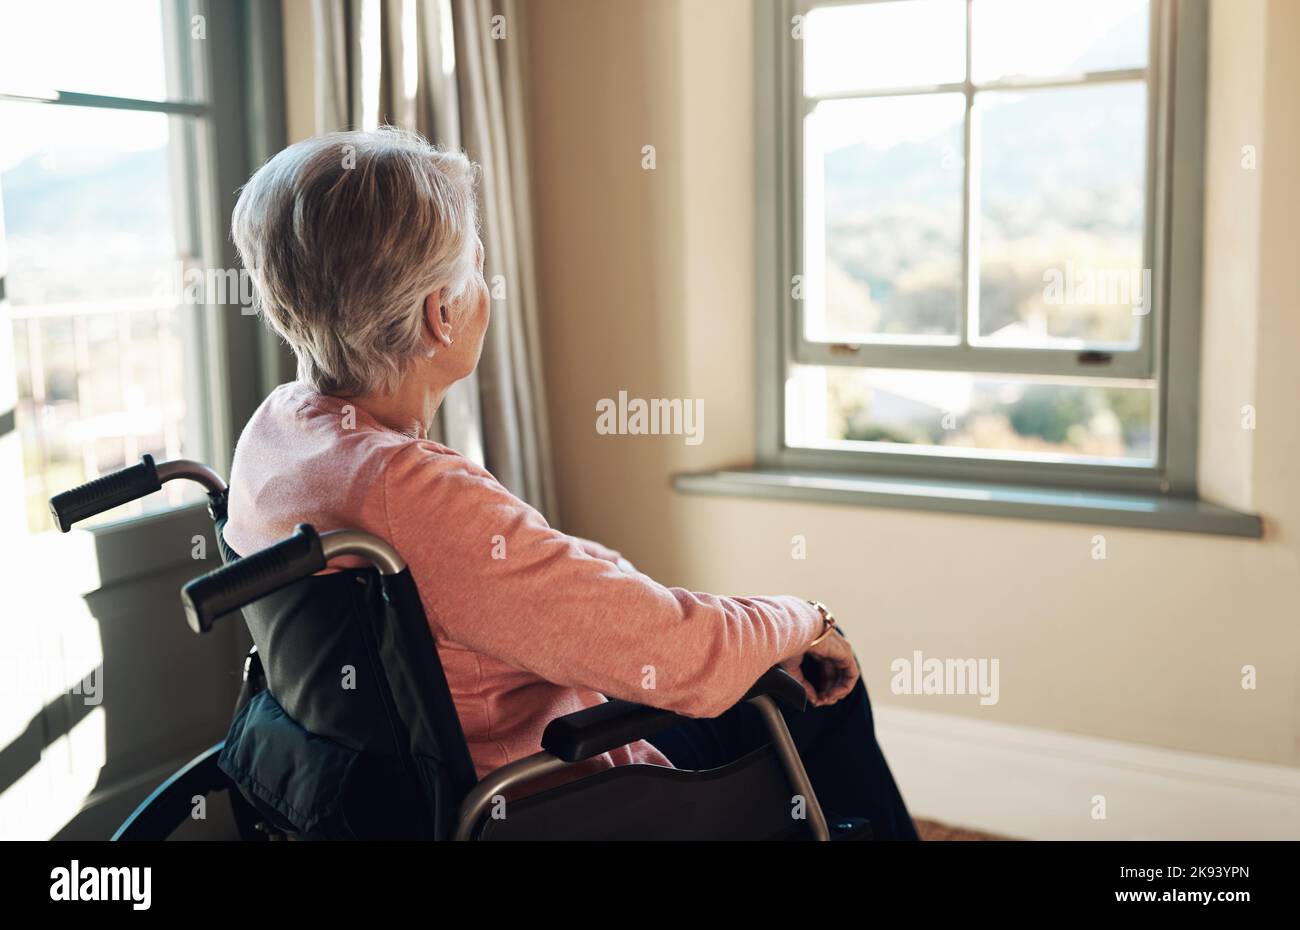 Wie ich wünschte, ich hätte mein Leben zurück. Eine ältere Frau im Rollstuhl schaute nachdenklich aus einem Fenster zu Hause. Stockfoto